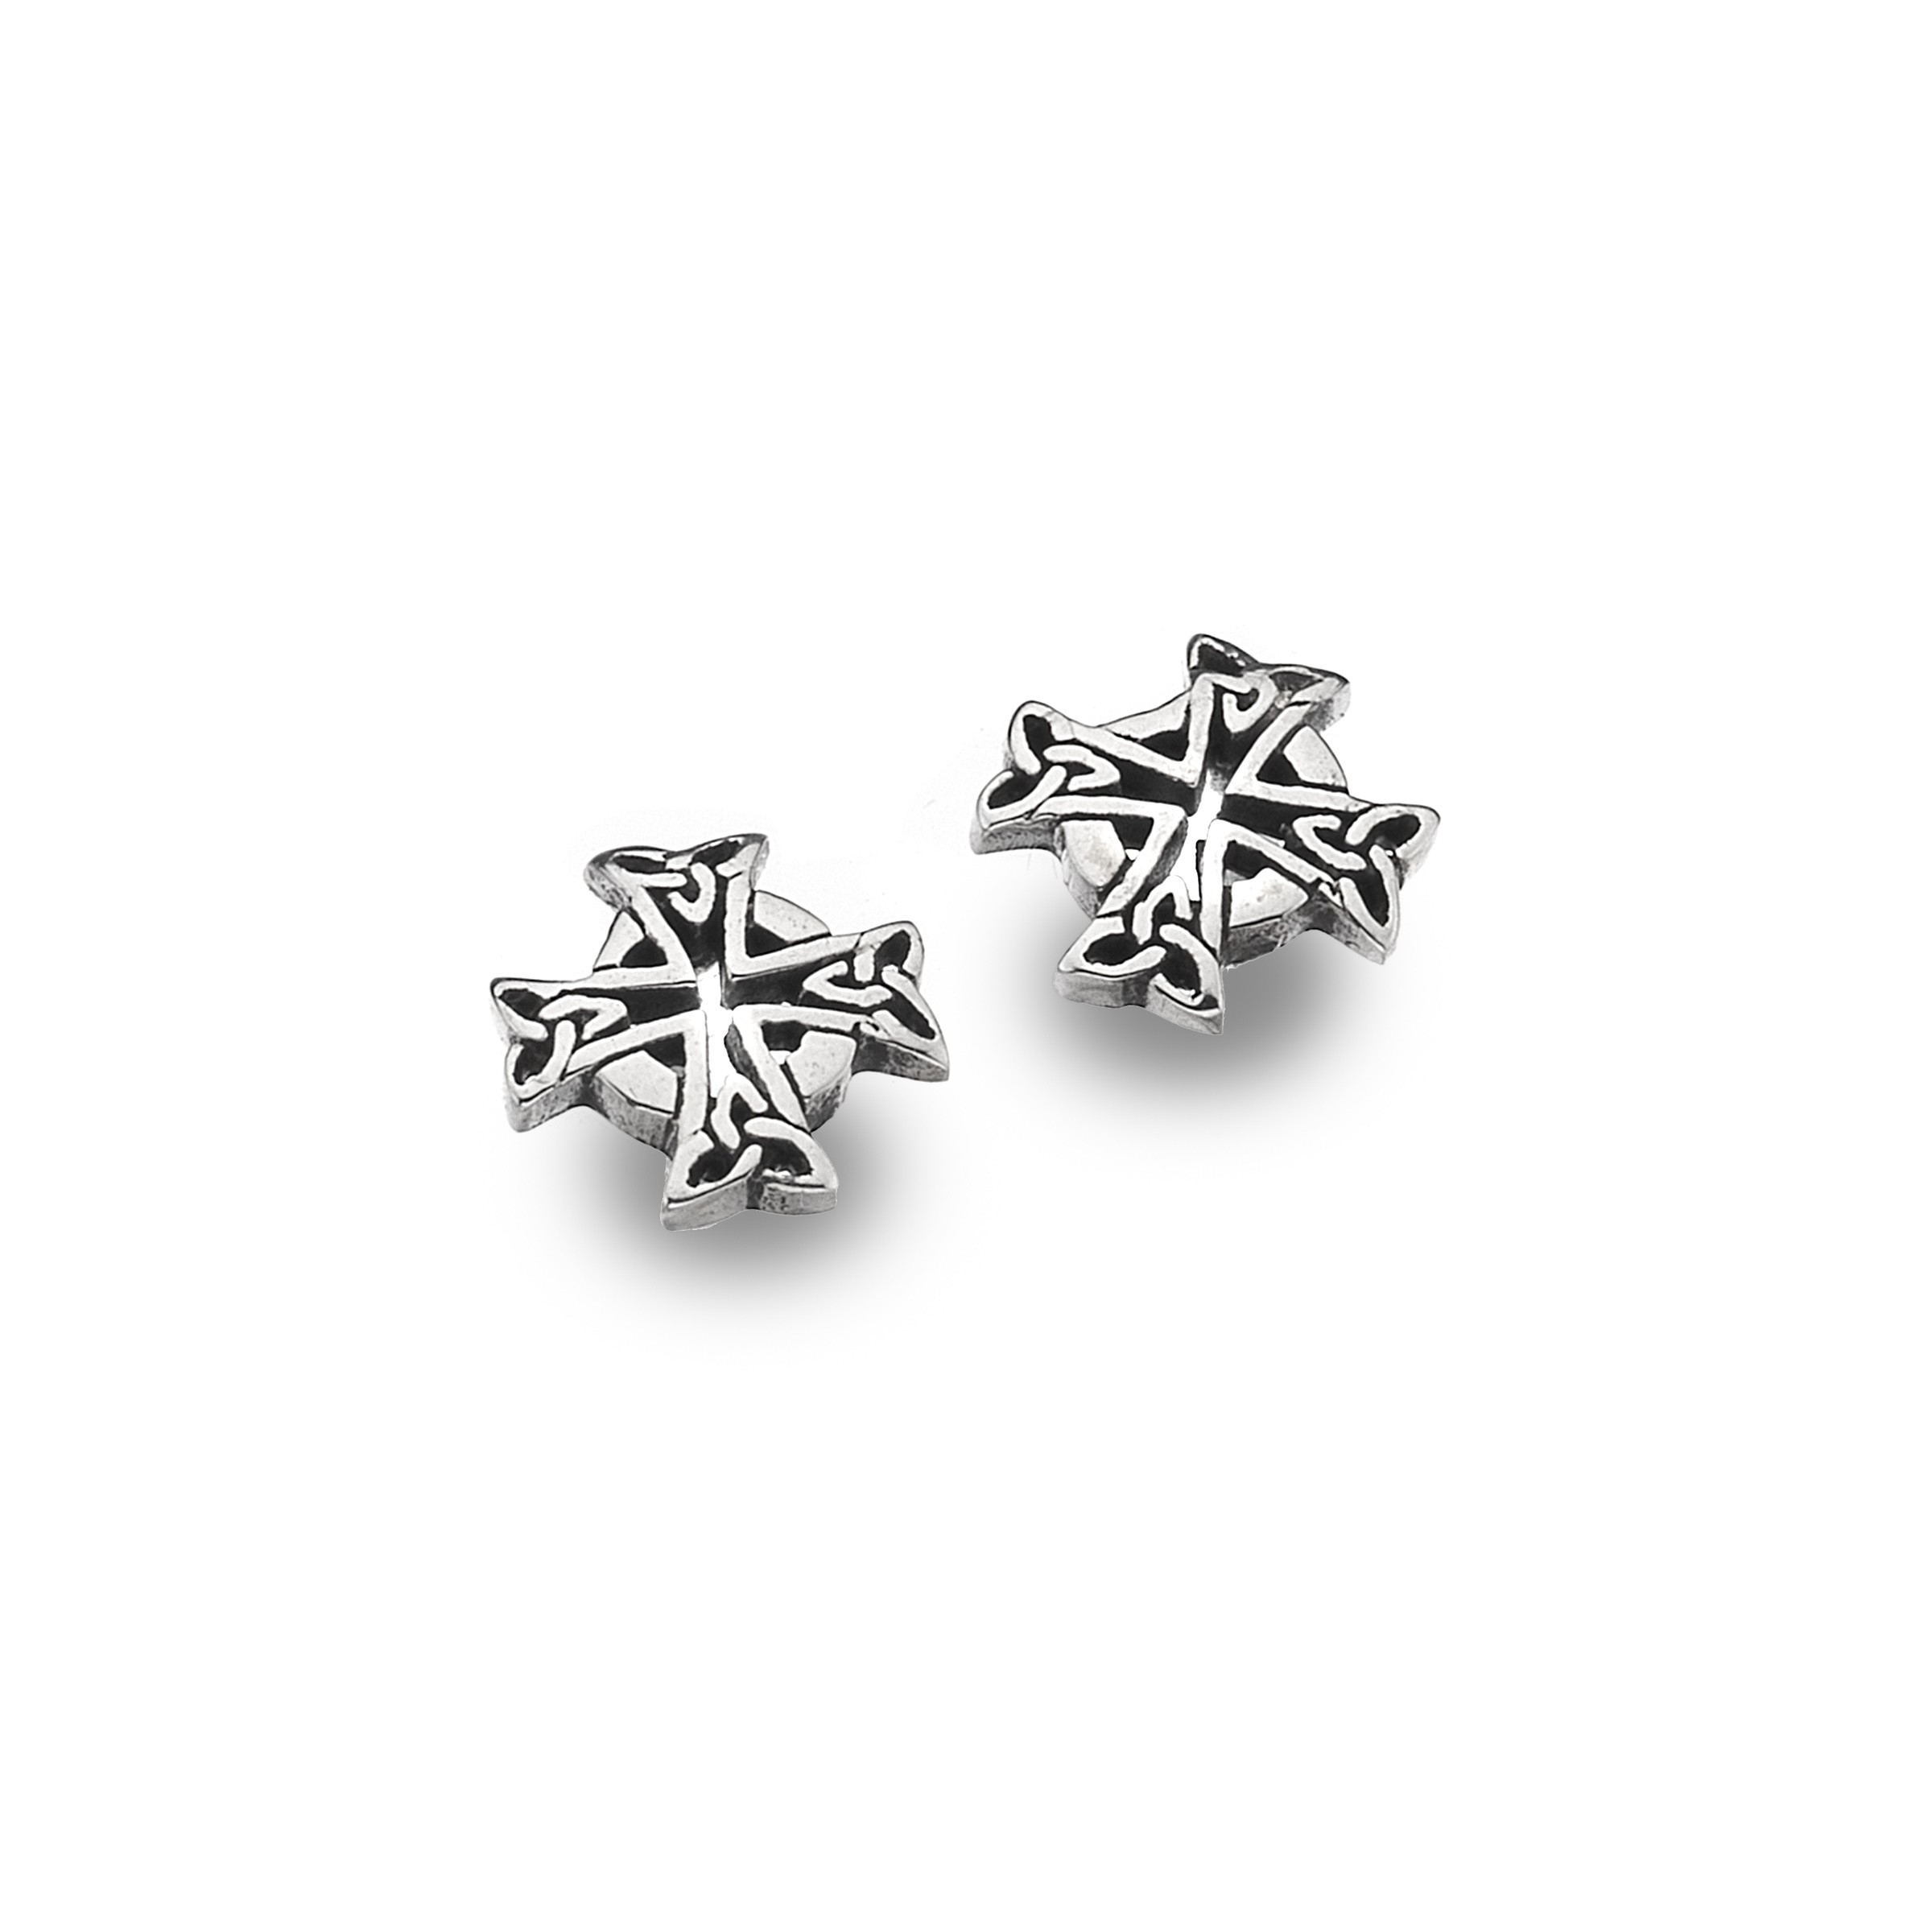 Celtic Cross Sterling Silver Stud Earrings